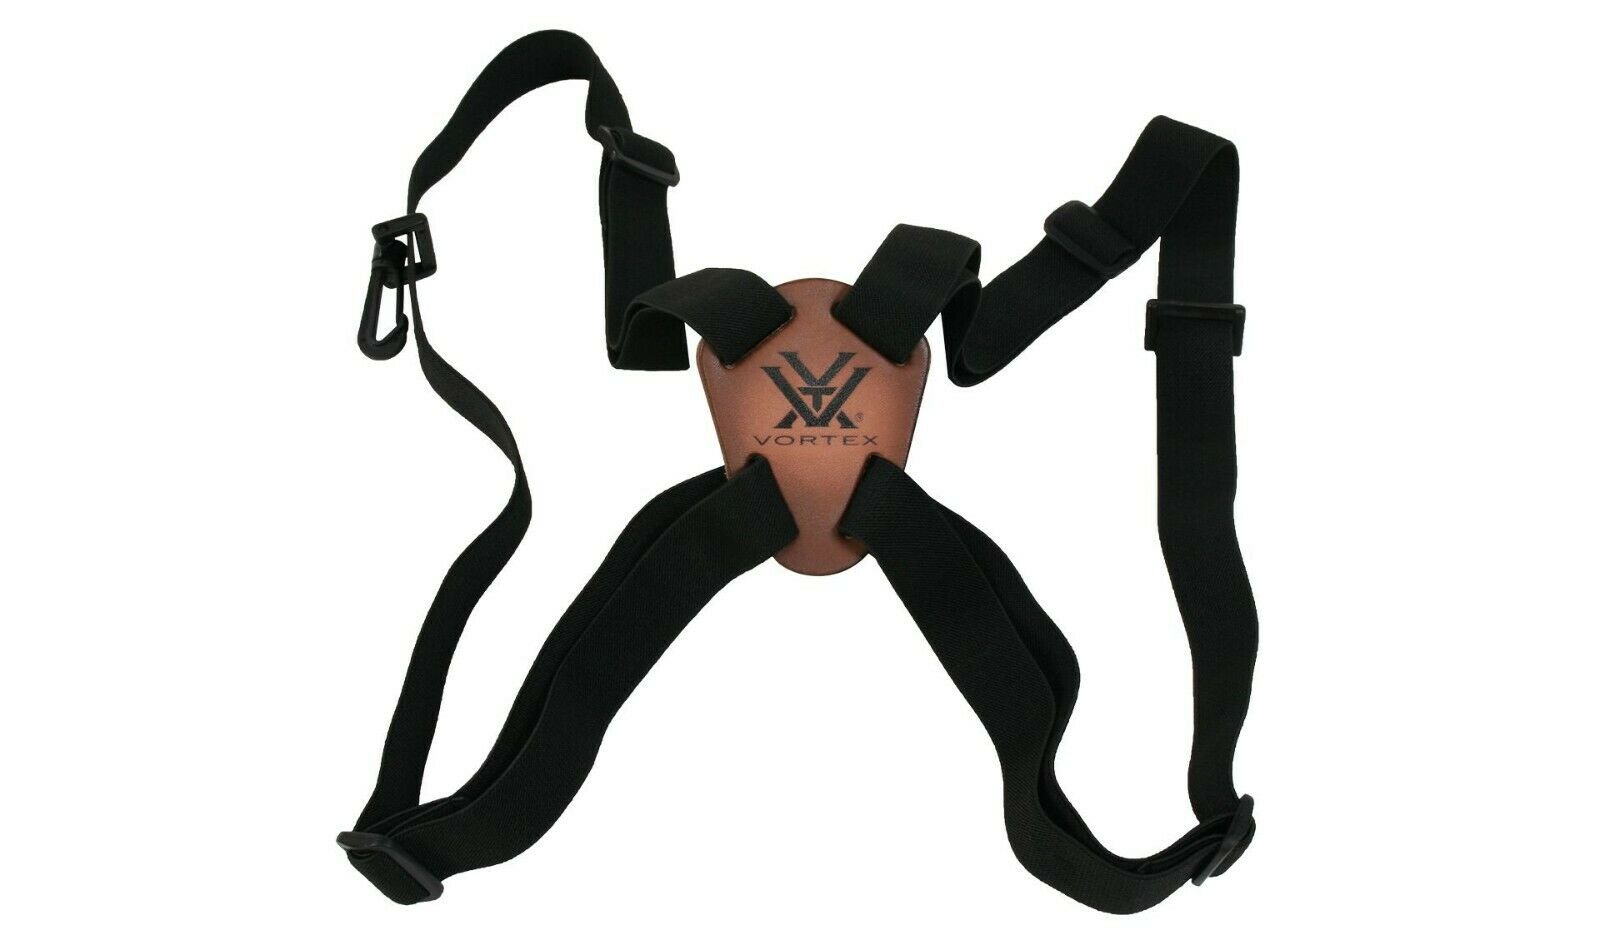 Vortex Binocular Harness Strap - Authorized Vortex Dealer - Free Shipping